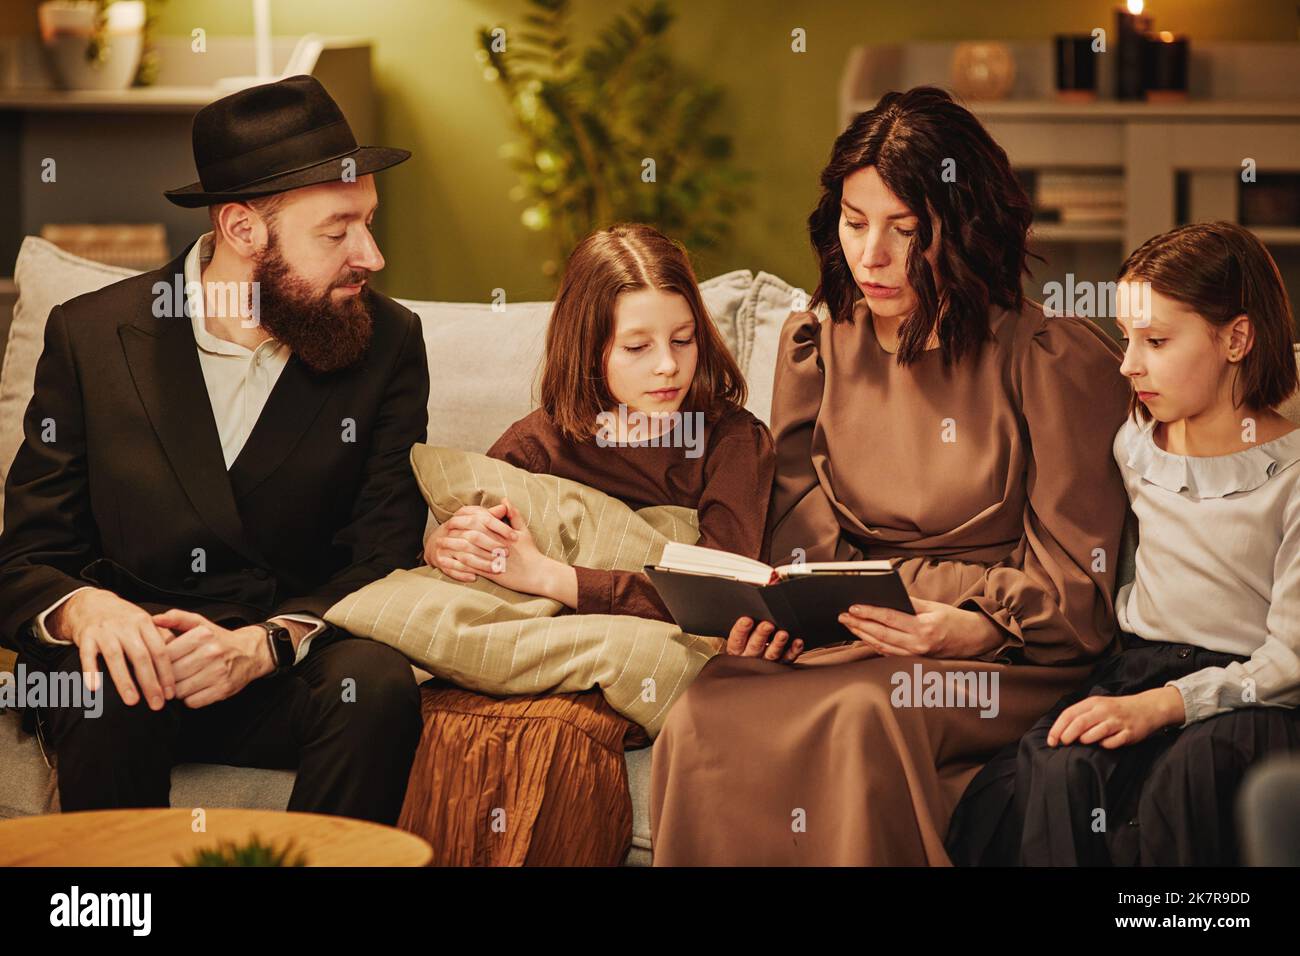 Ritratto della famiglia ebraica tradizionale a casa con focalizzazione sul libro di lettura della madre Foto Stock